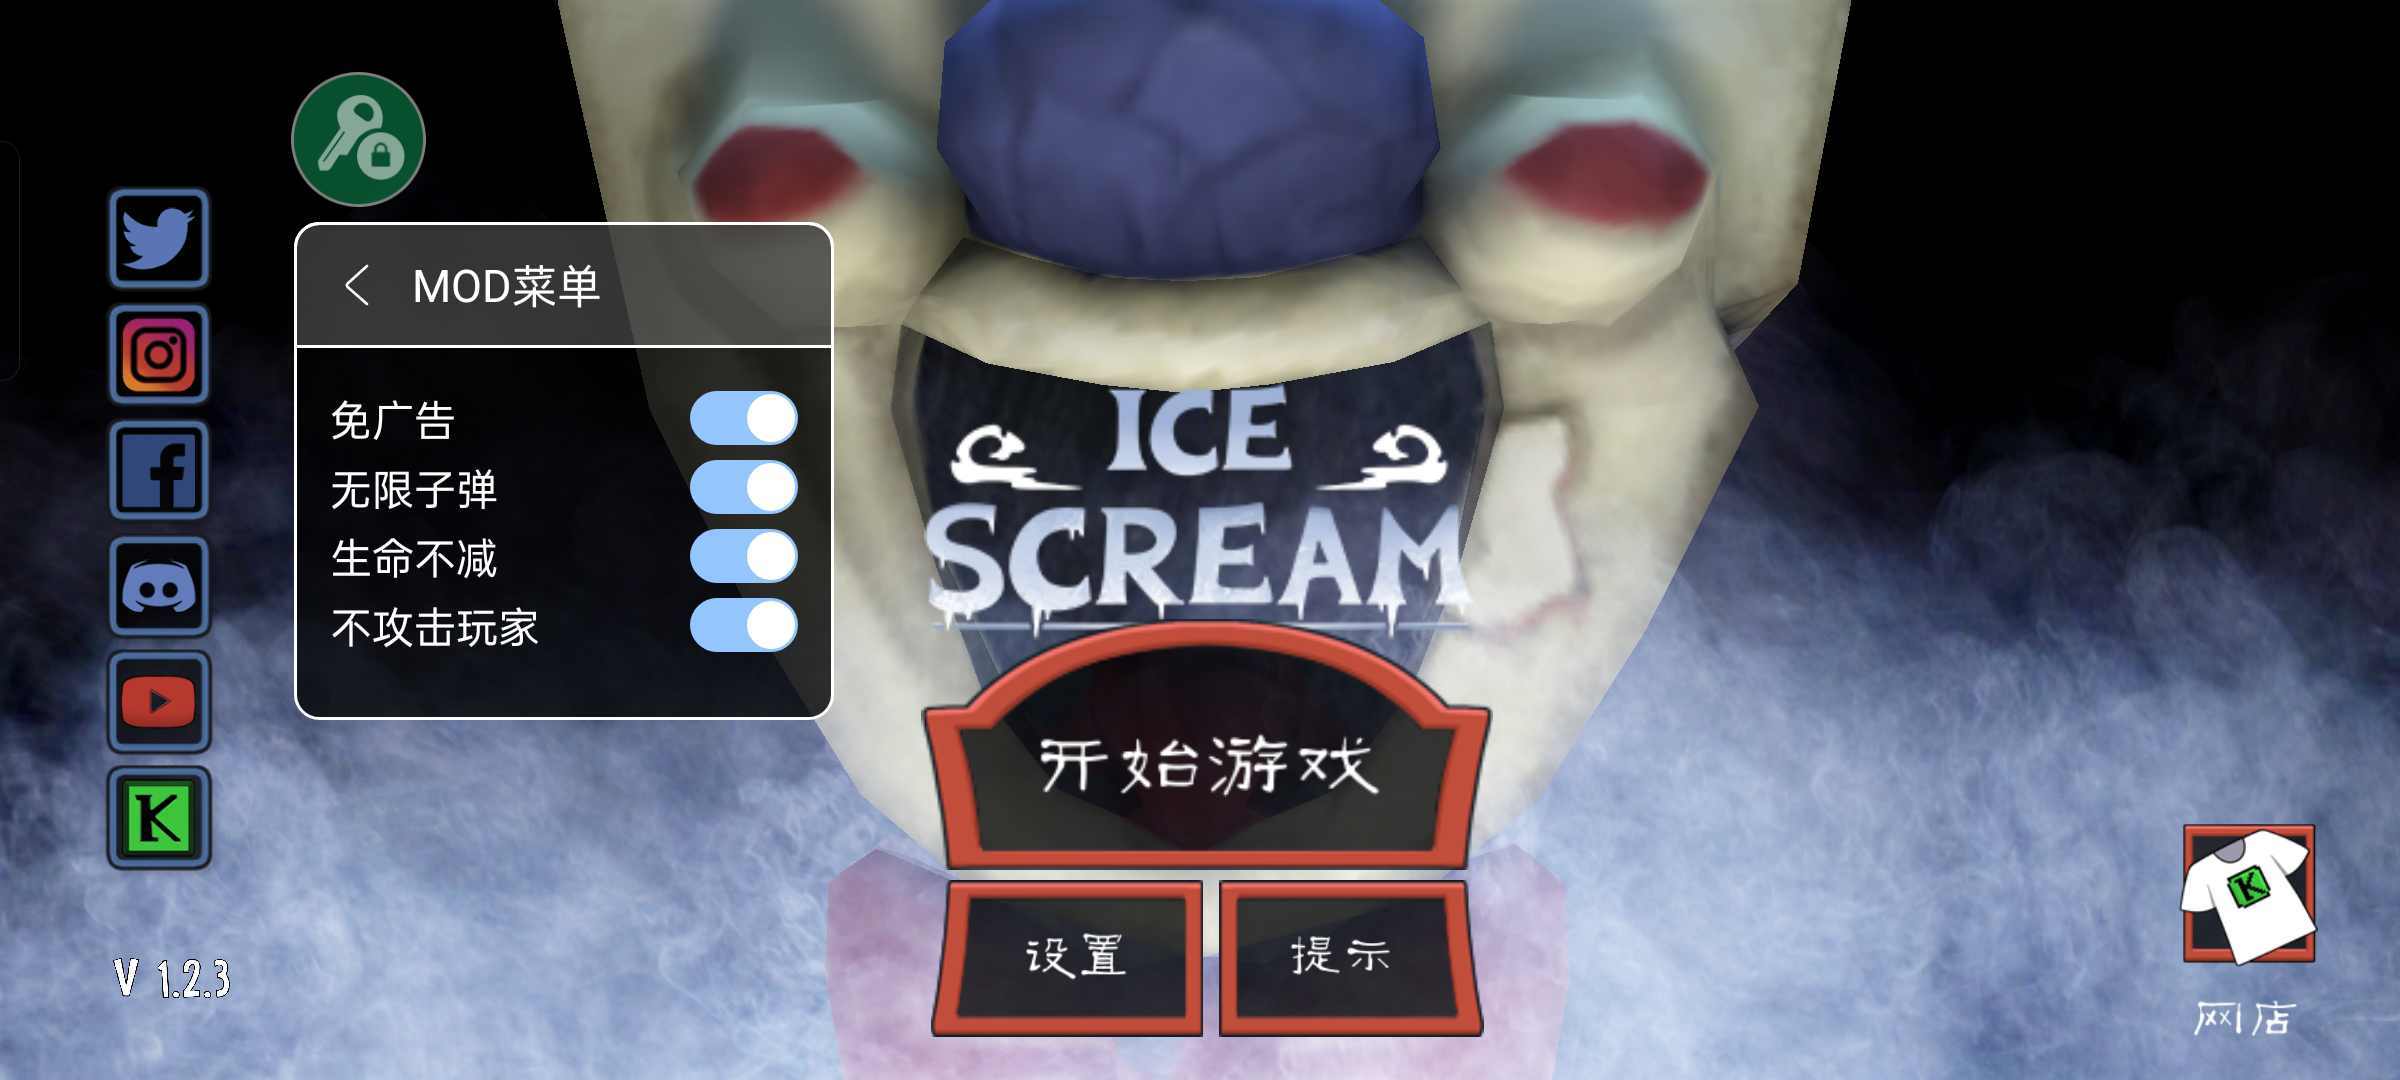 冰淇淋怪人山寨版(Ice Scream 1)